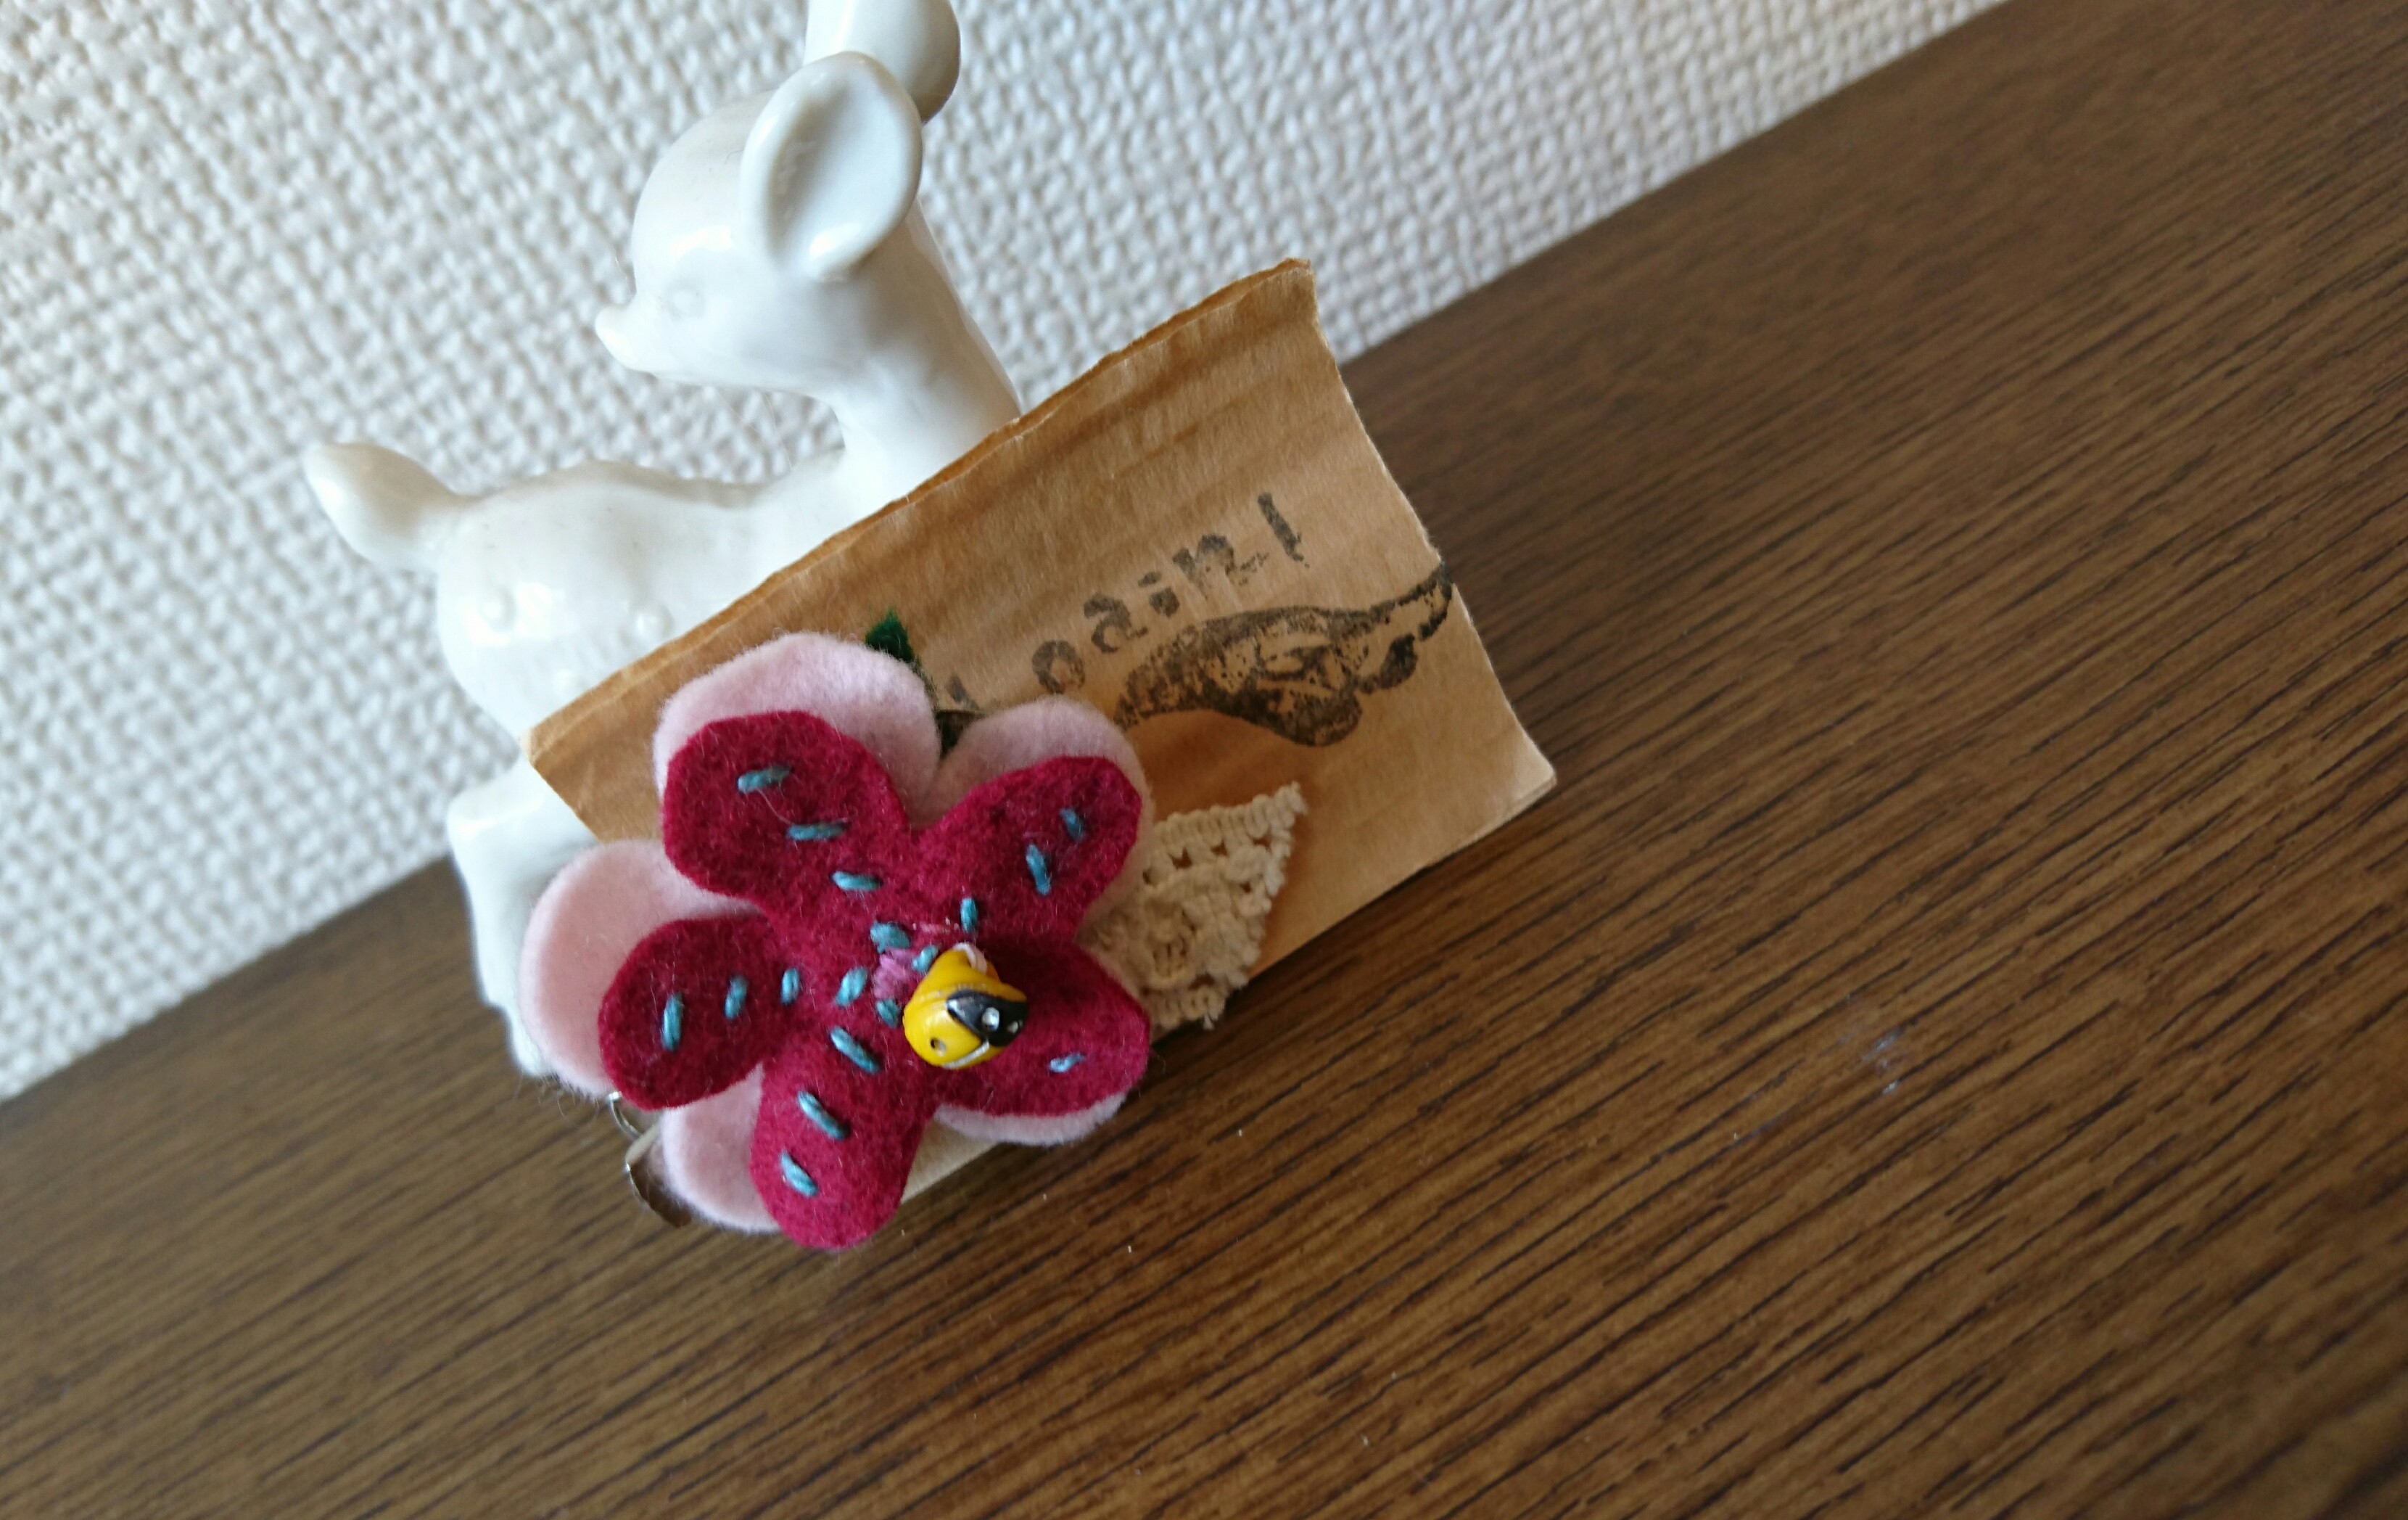 フェルト花とてんとう虫のクリップブローチ Iichi ハンドメイド クラフト作品 手仕事品の通販